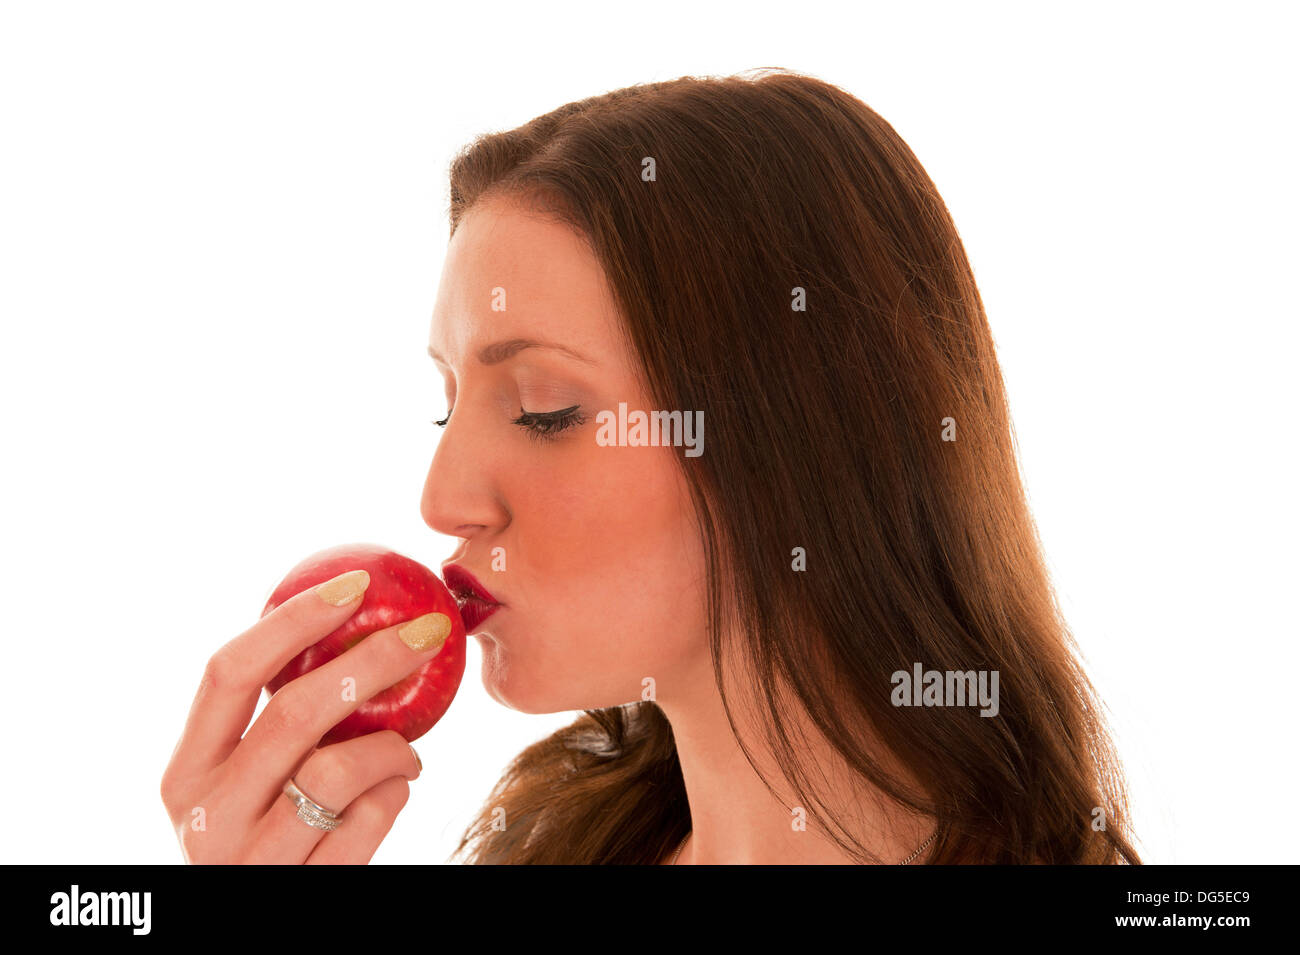 Junges Mädchen mit roten Lippen küsst einen roten Apfel im portrait Stockfoto